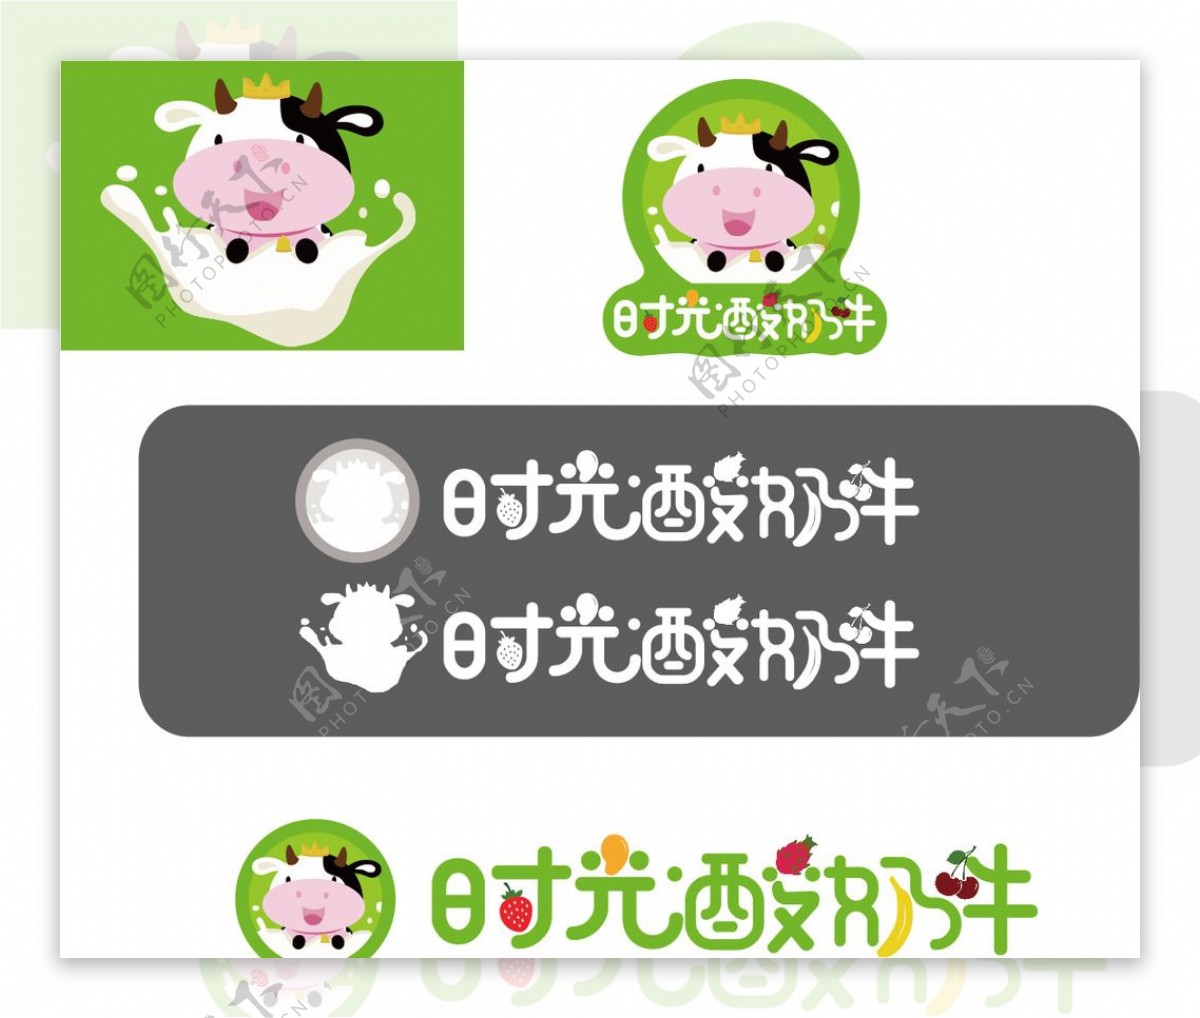 时光酸奶牛酸奶logo